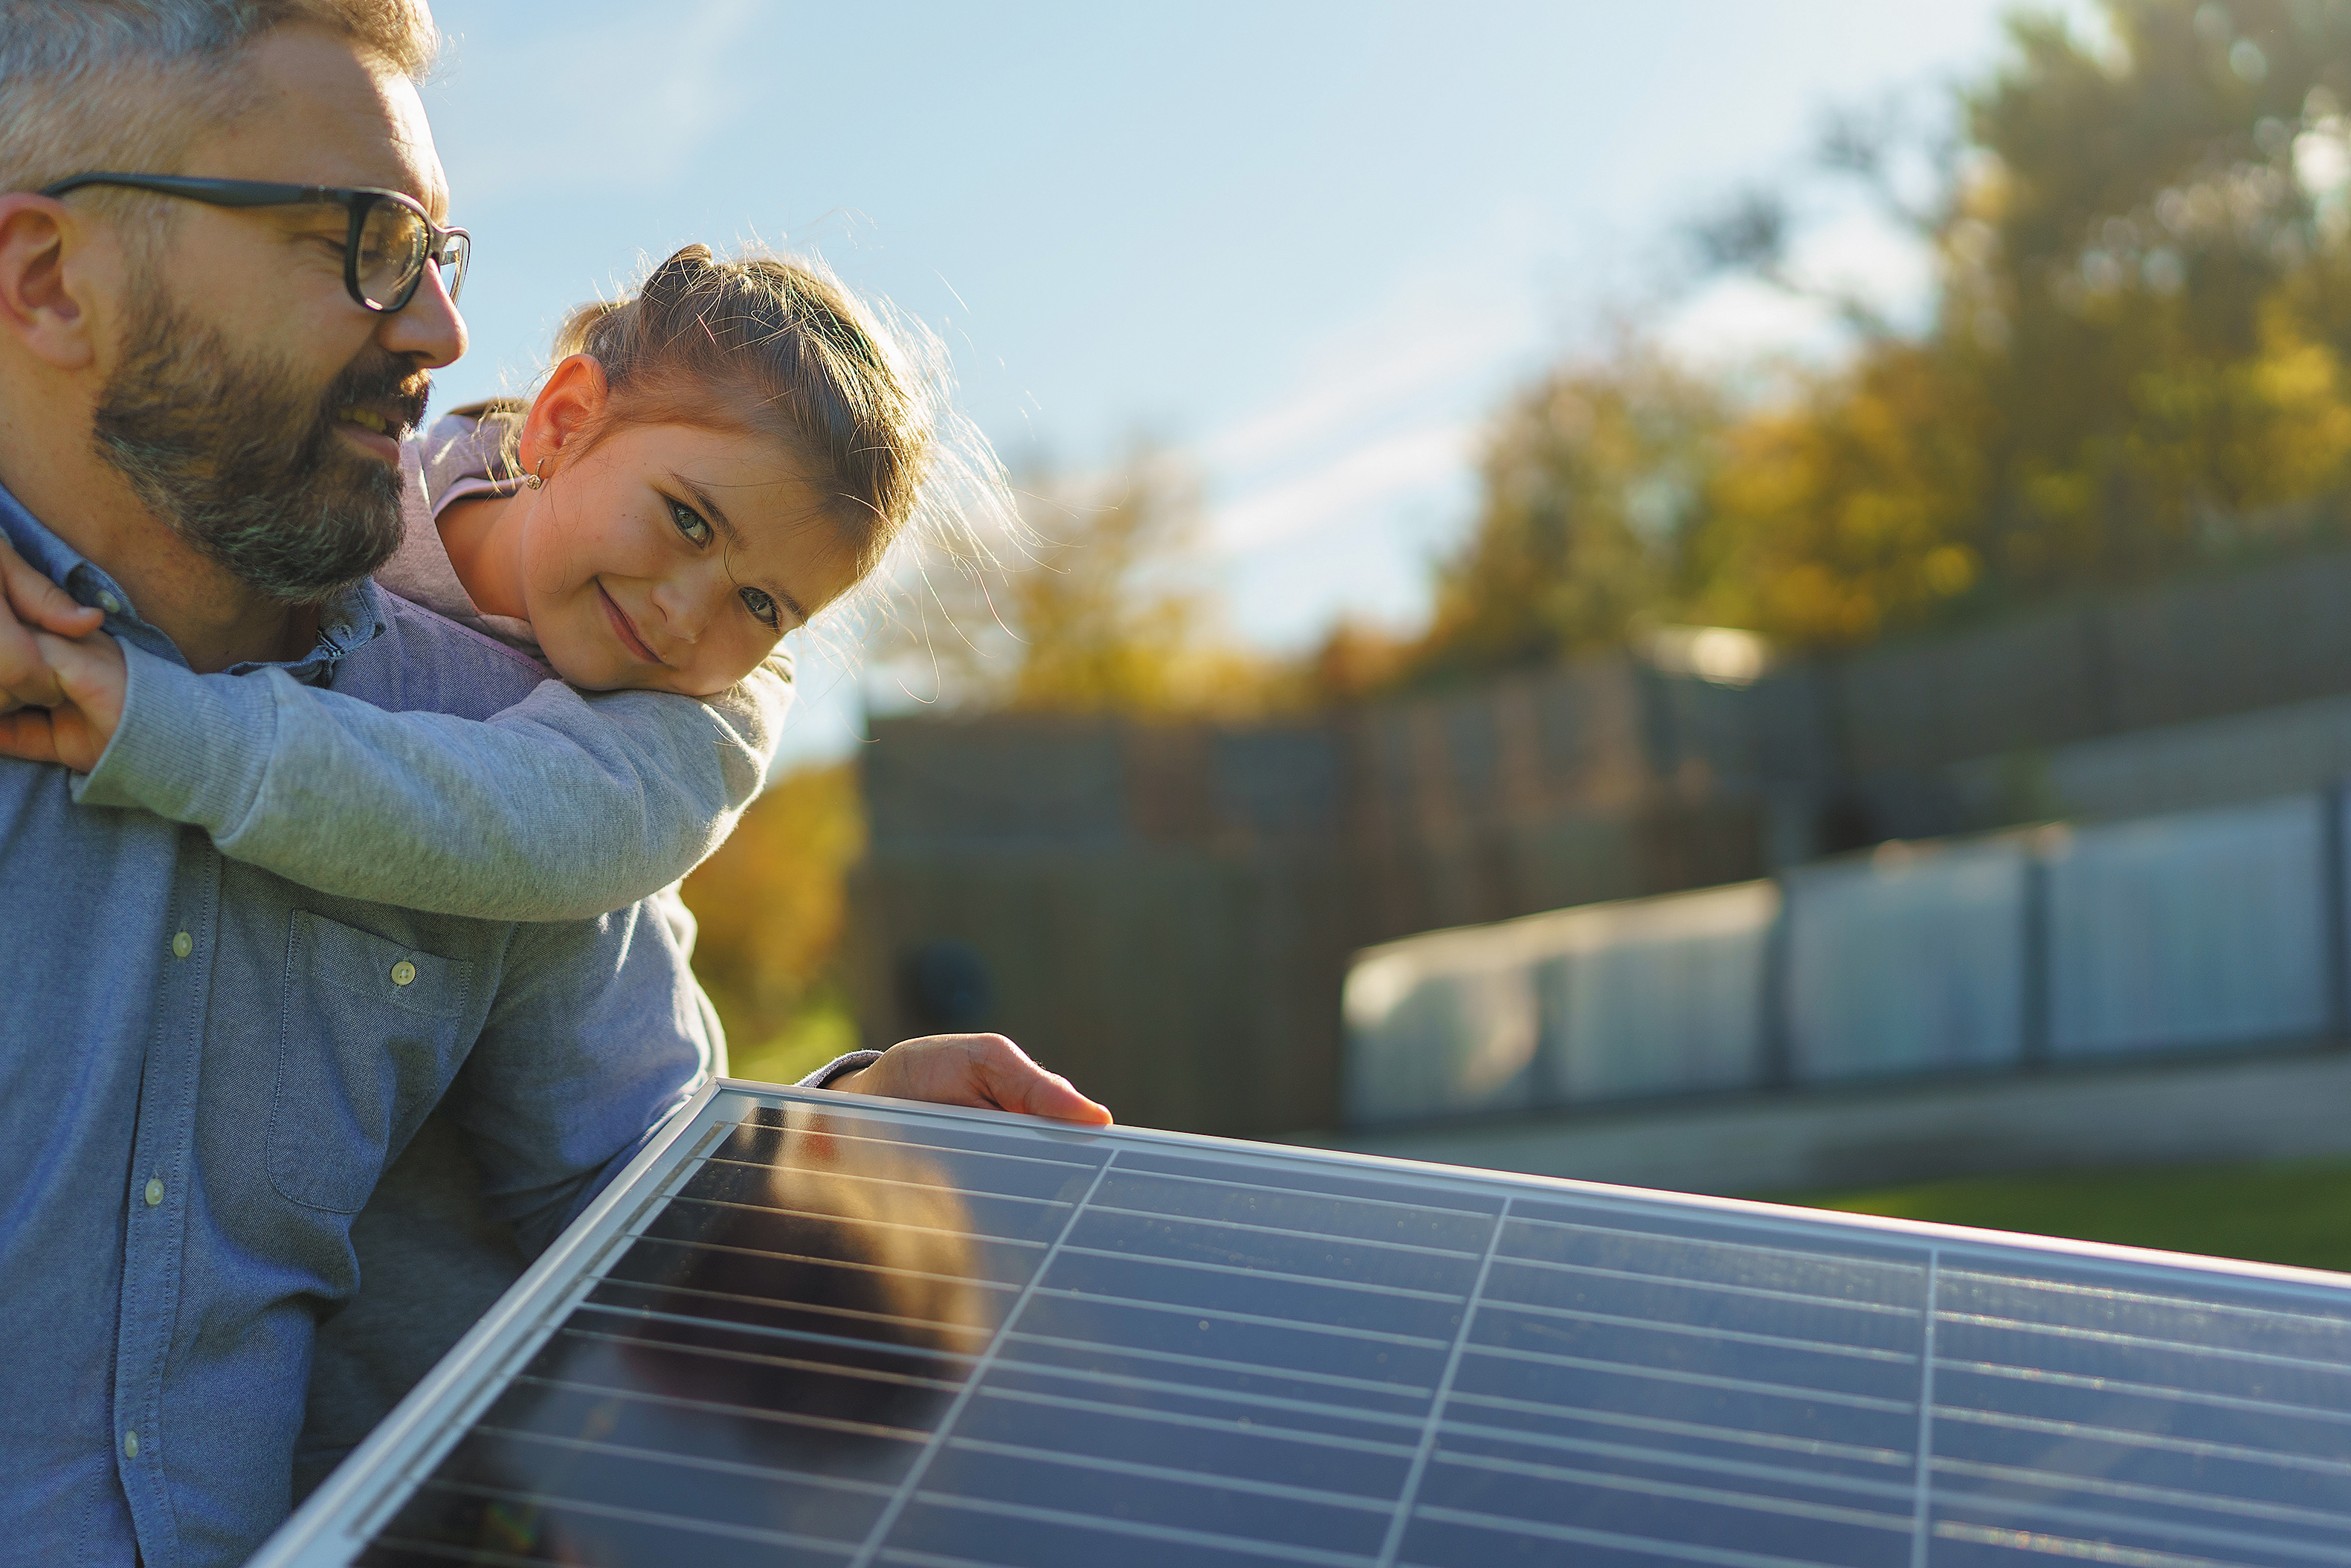 Installer dans son jardin un panneau solaire « plug and play » permet de faire des économies sans appeler un installeur. Un geste simple.